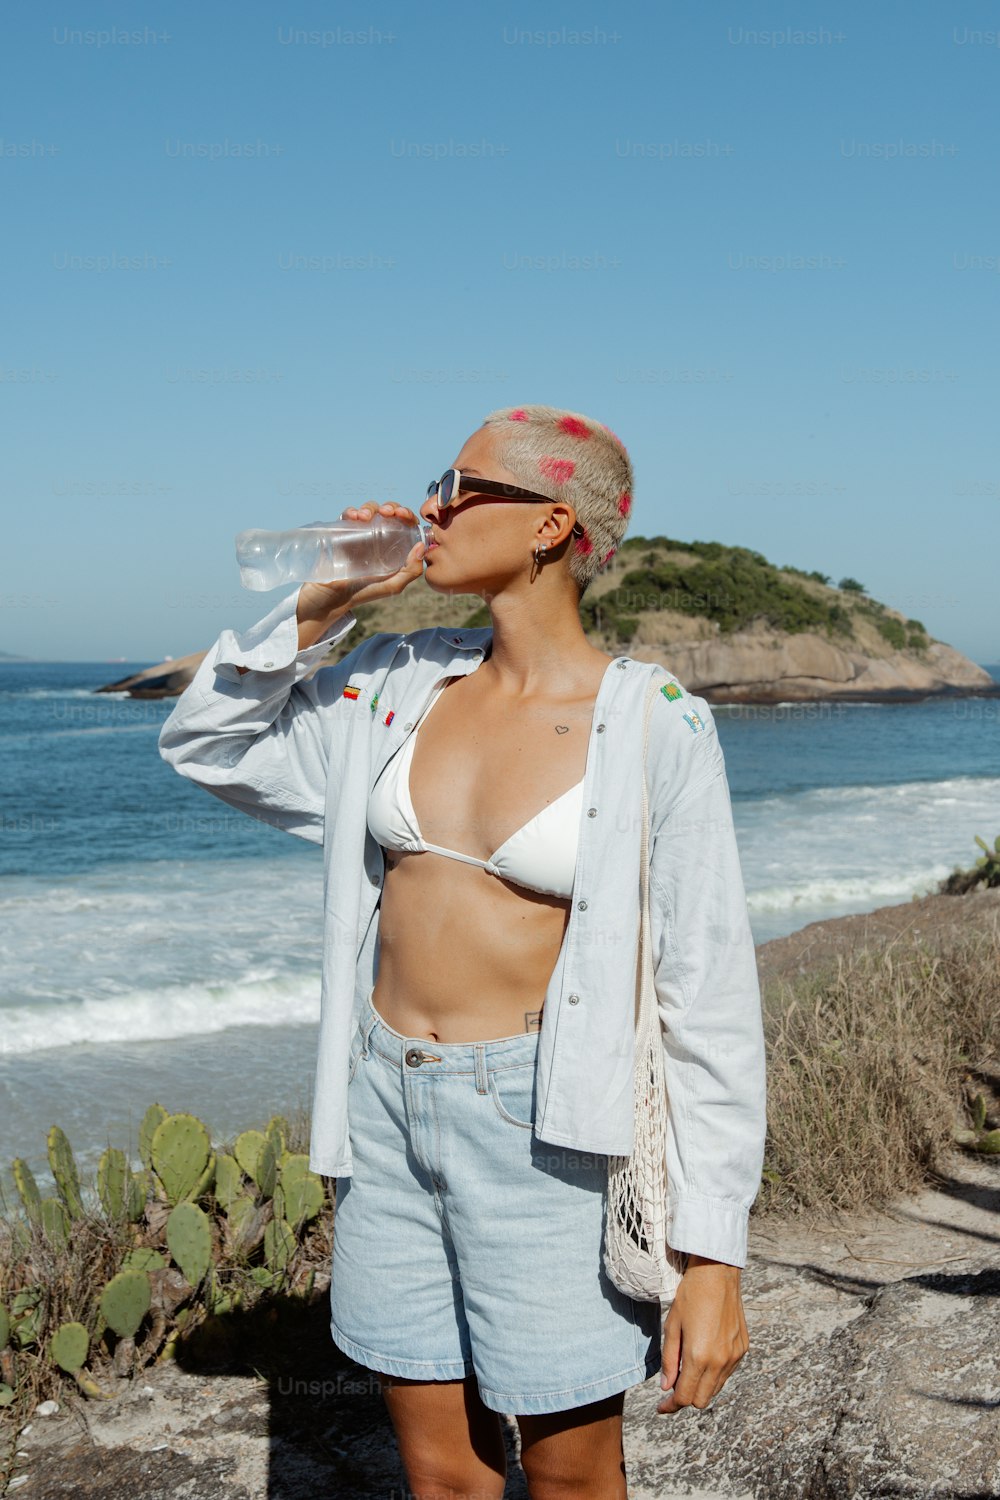 a woman in a bikini drinking water from a bottle